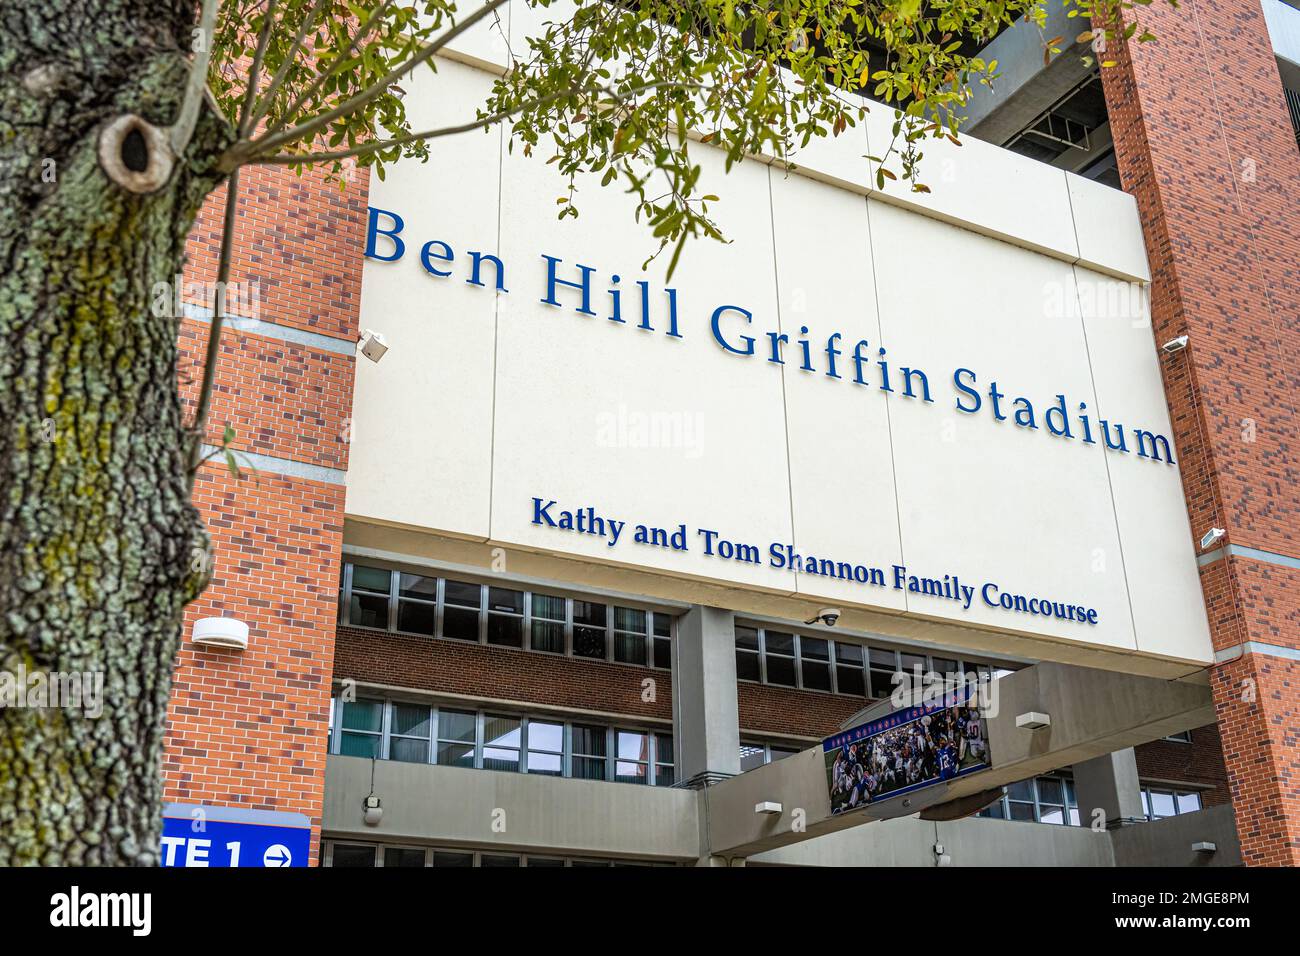 Ben Hill Griffin Stadium, conosciuto anche come "The Swamp", presso l'Università della Florida a Gainesville, Florida. (USA) Foto Stock